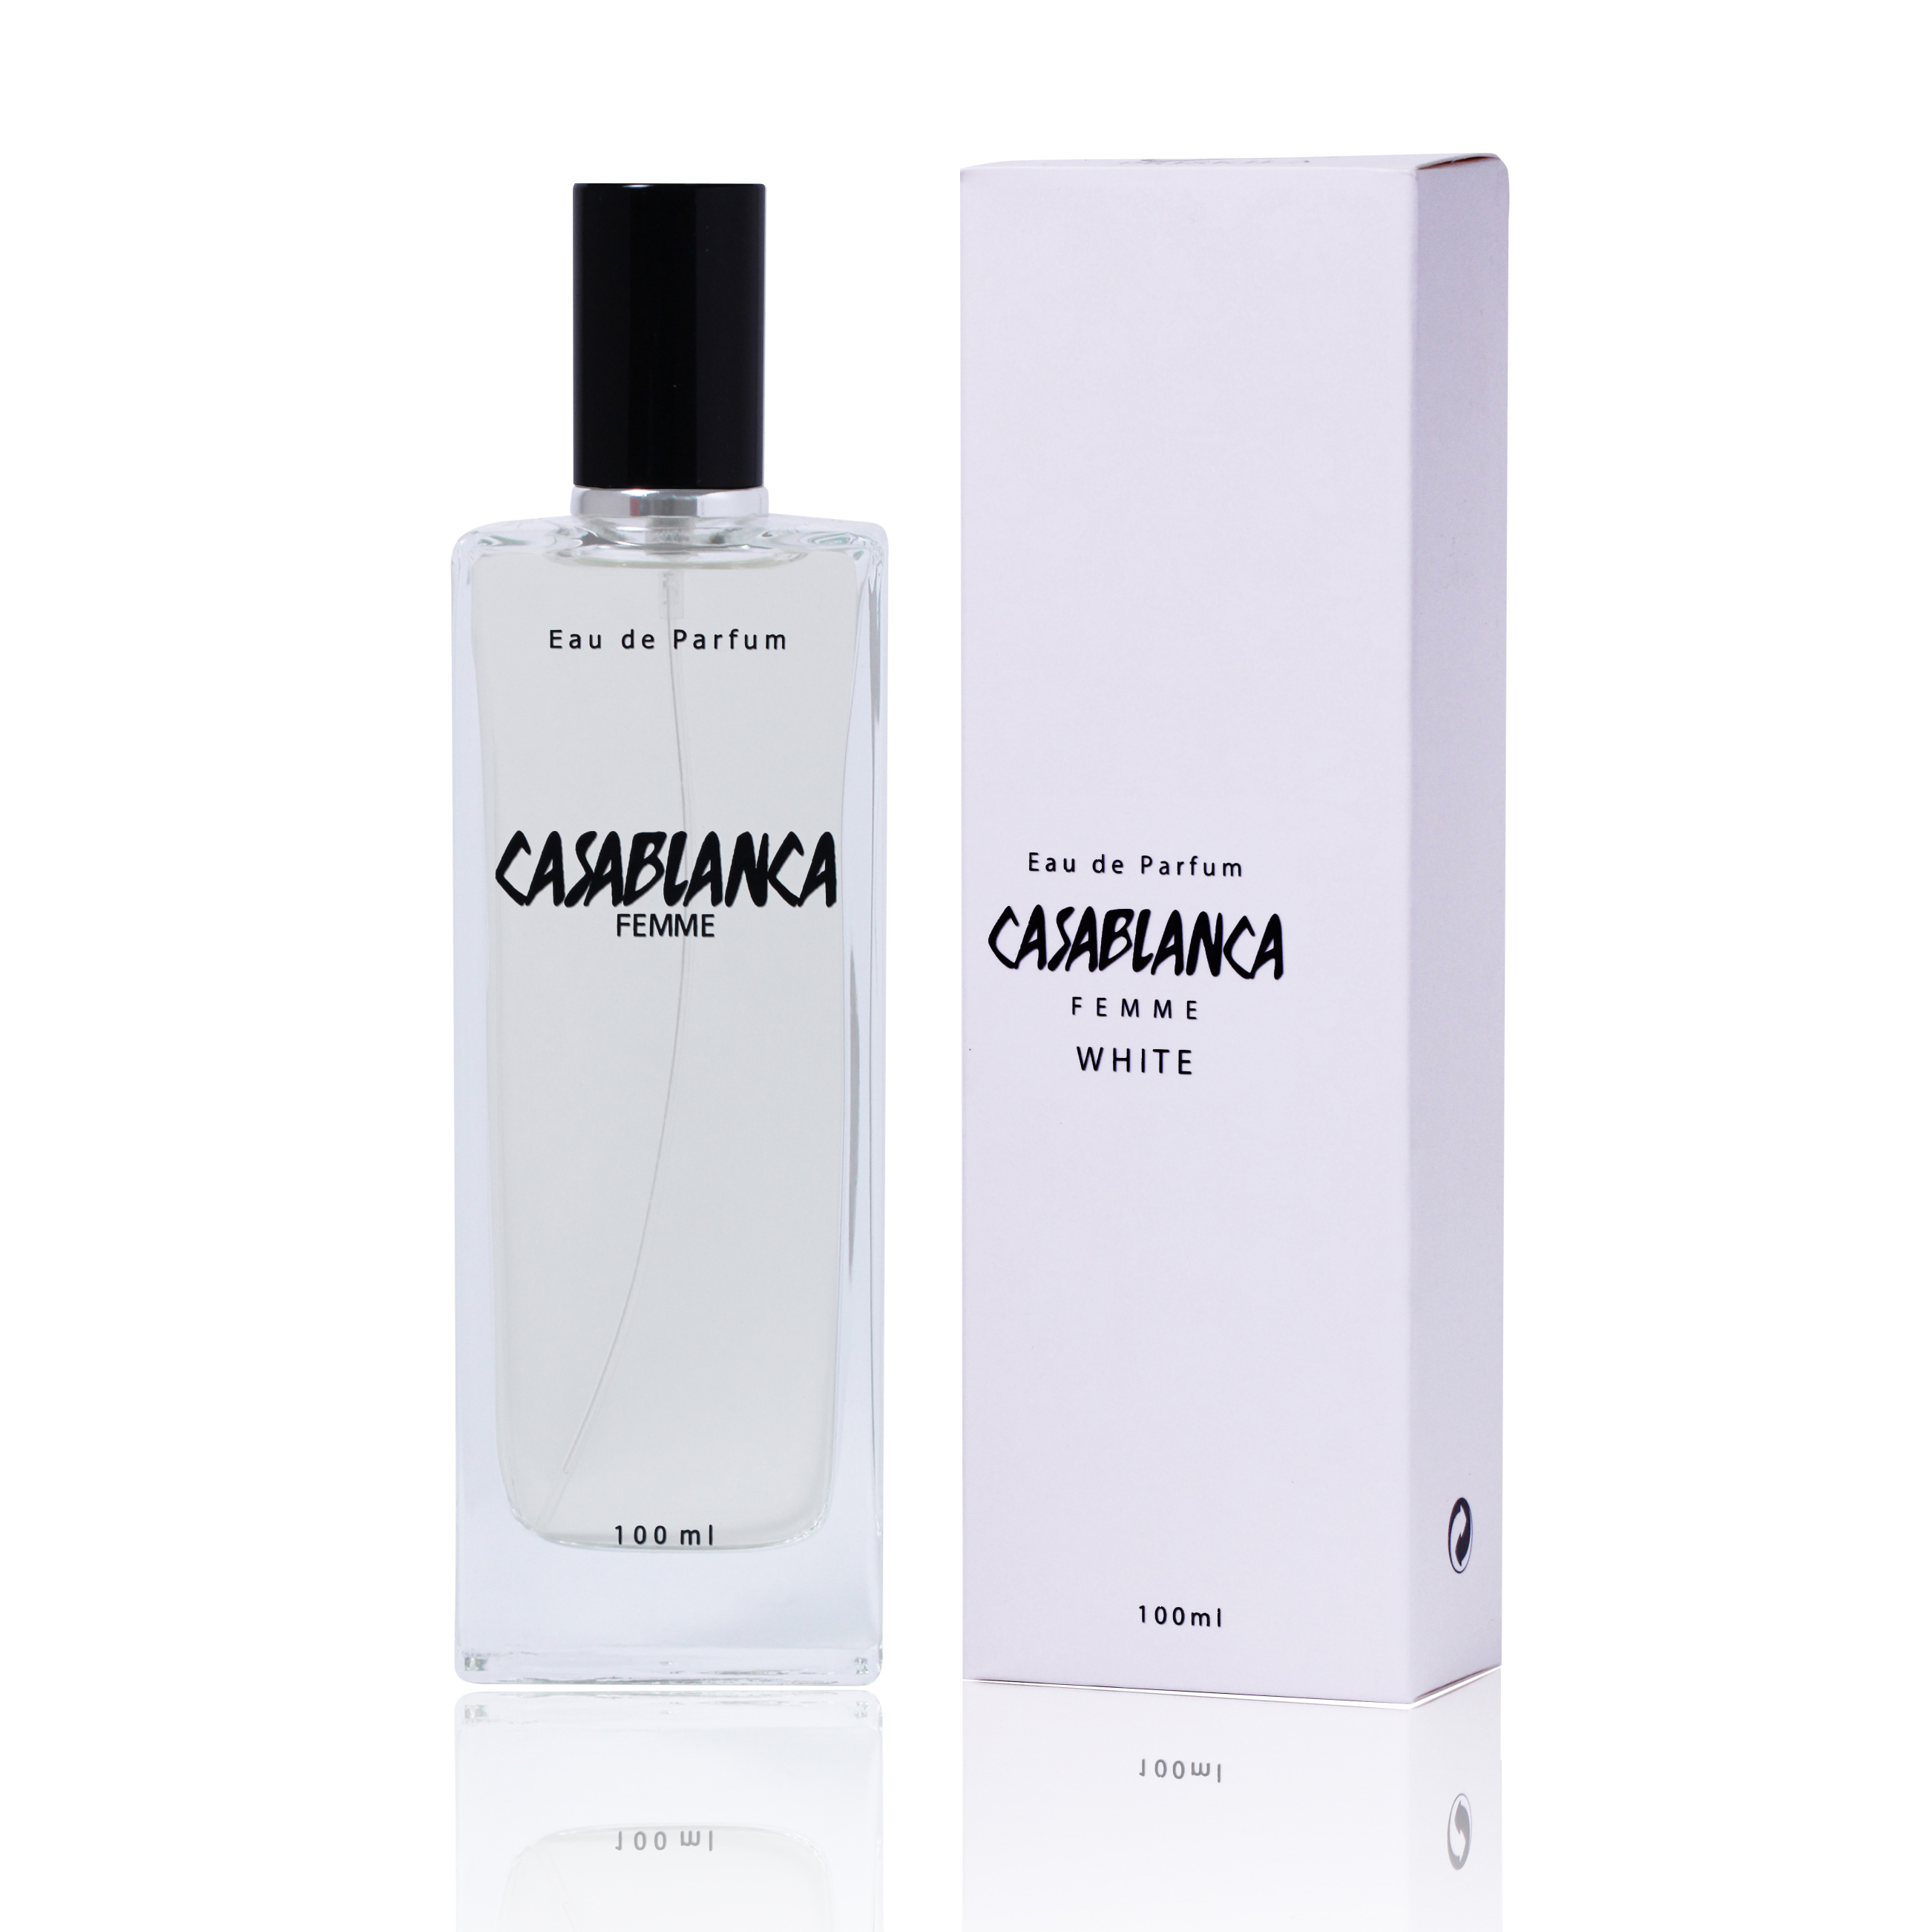 Harga Parfum Casablanca Femme